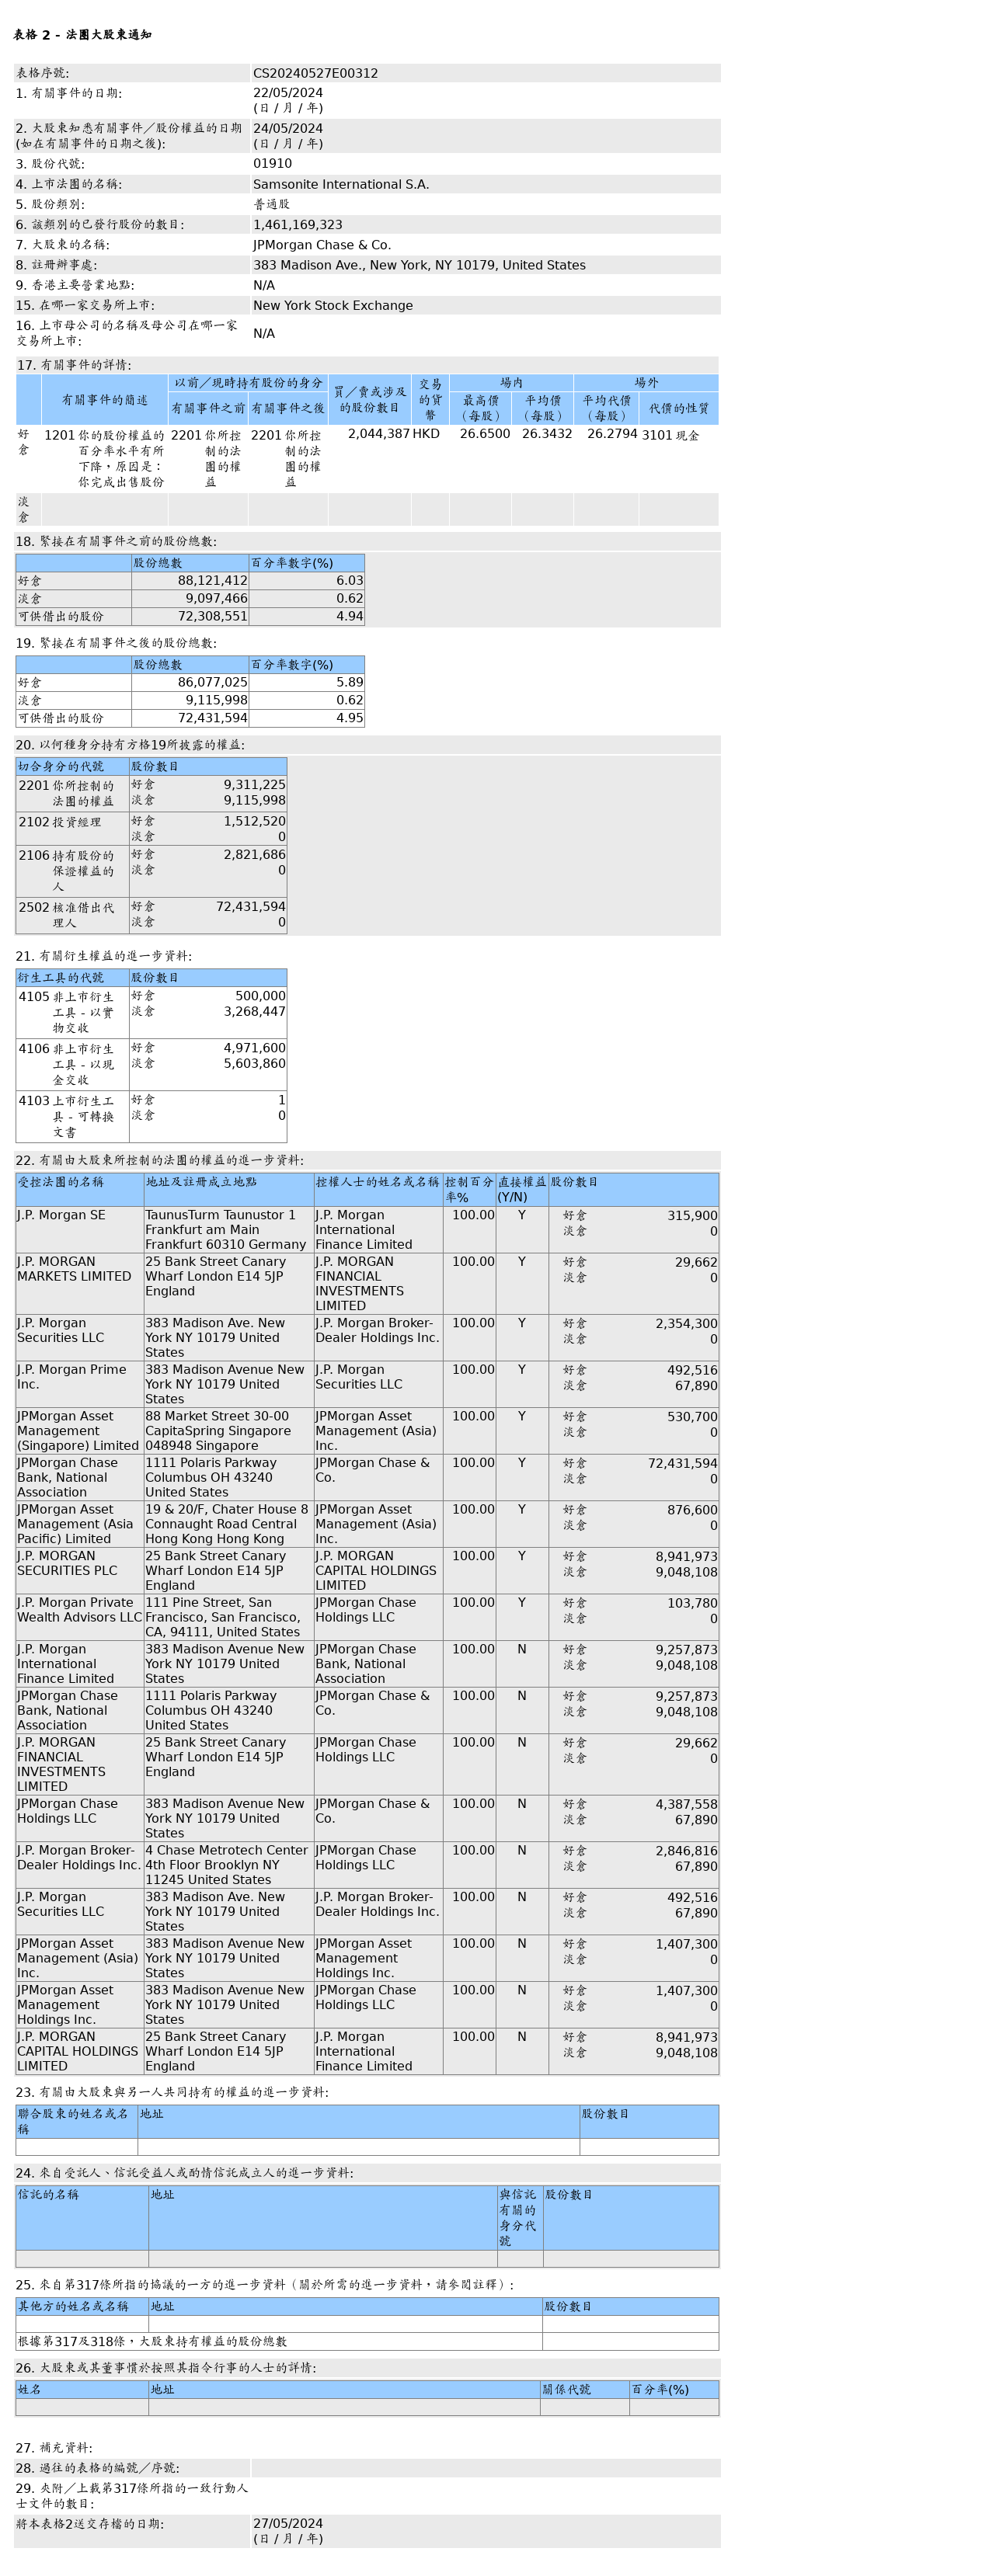 摩根大通售出新秀丽(01910.HK)204.44万股普通股股份，价值约5,385.57万港元